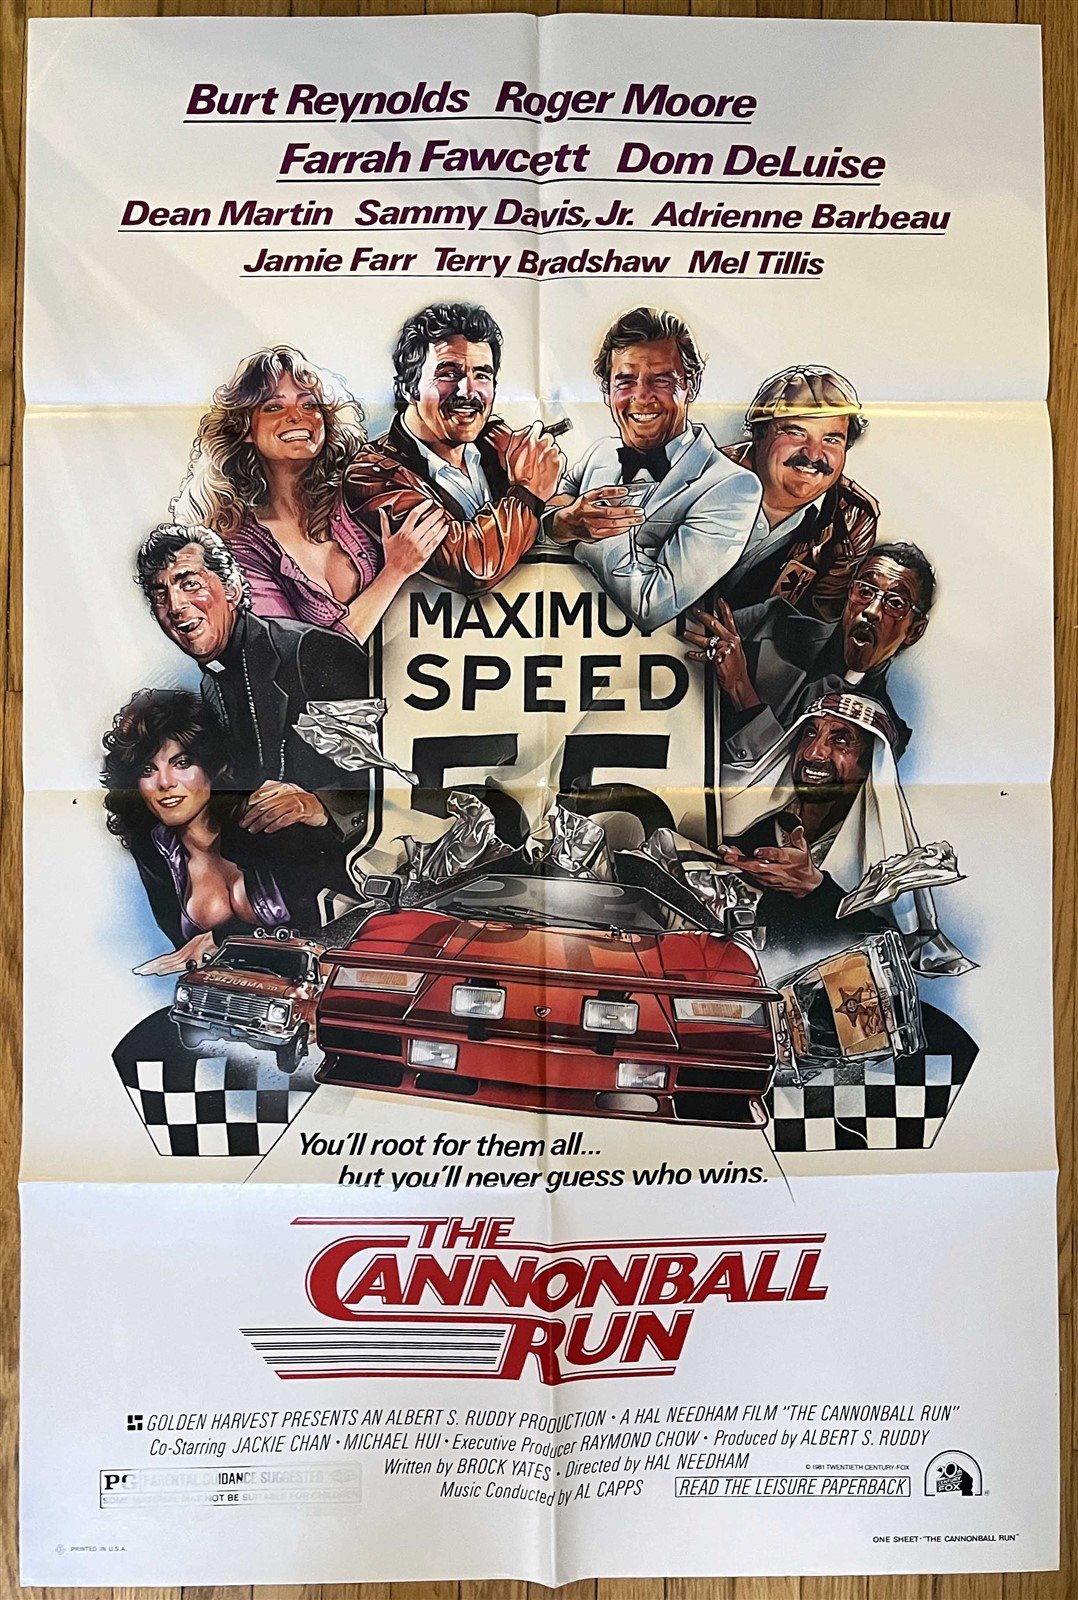 Burt Reynolds CANNONBALL RUN Farrah Fawcett movie poster 1981 ORIGINAL 27x41